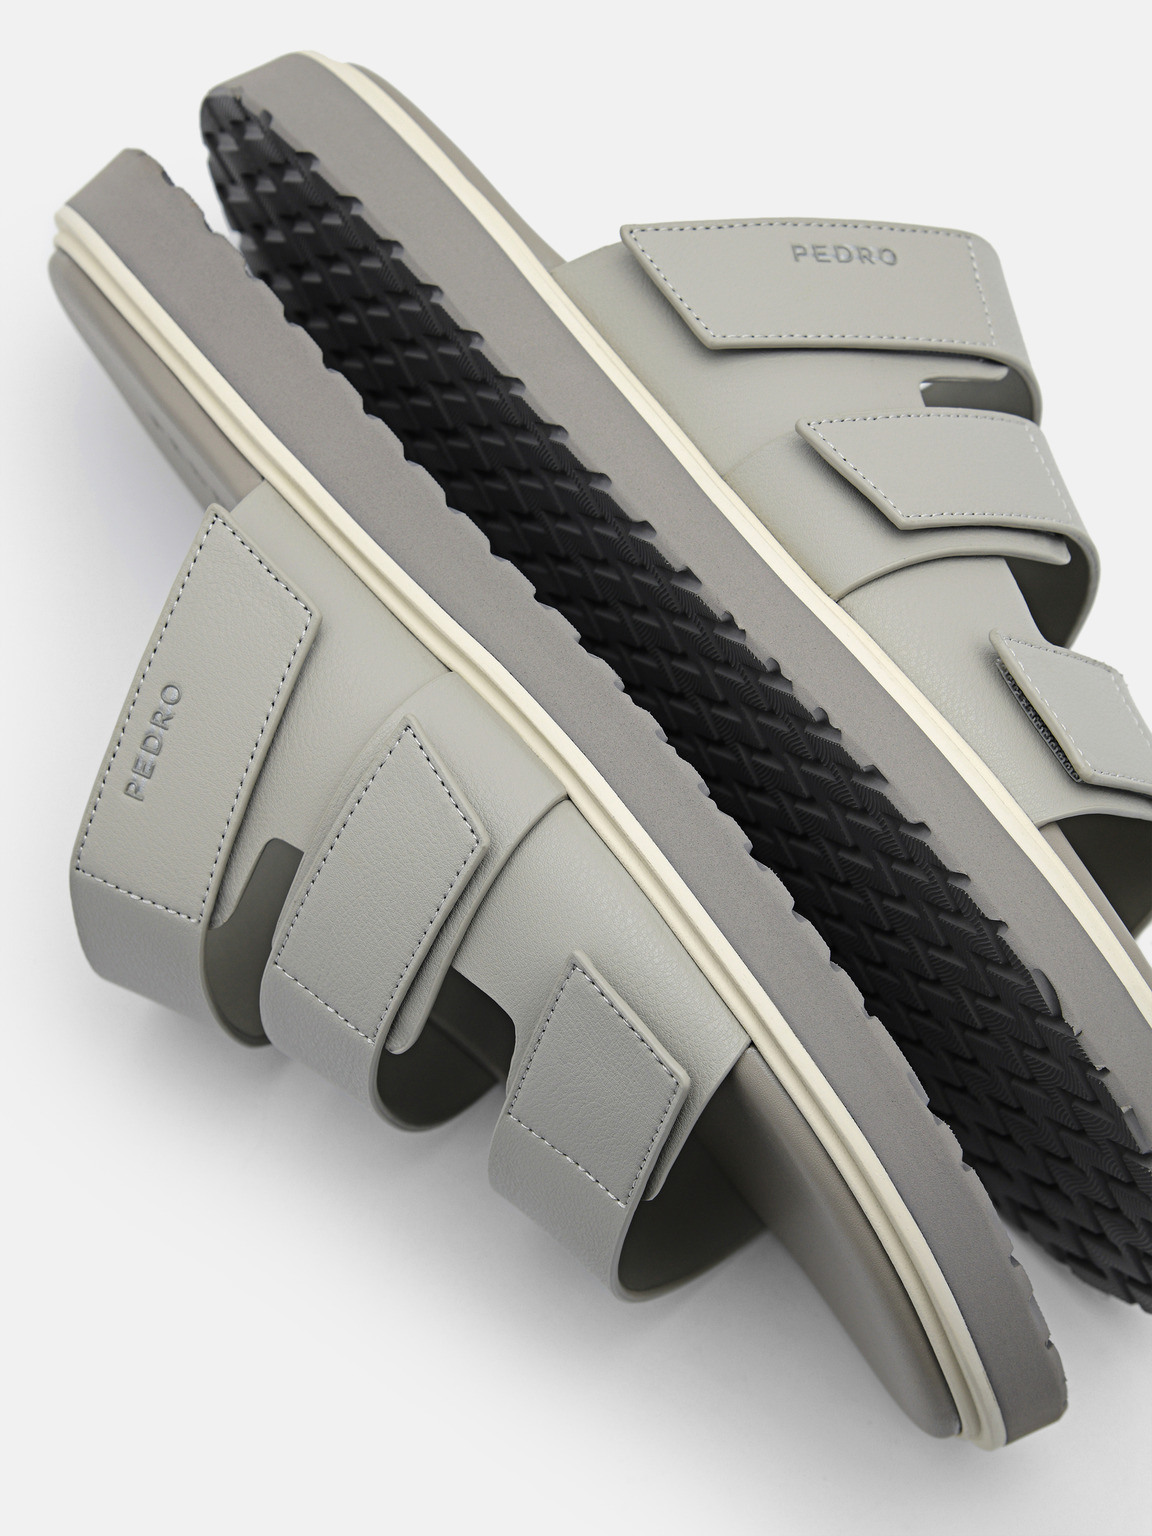 Velcro Slide Sandals, Light Grey